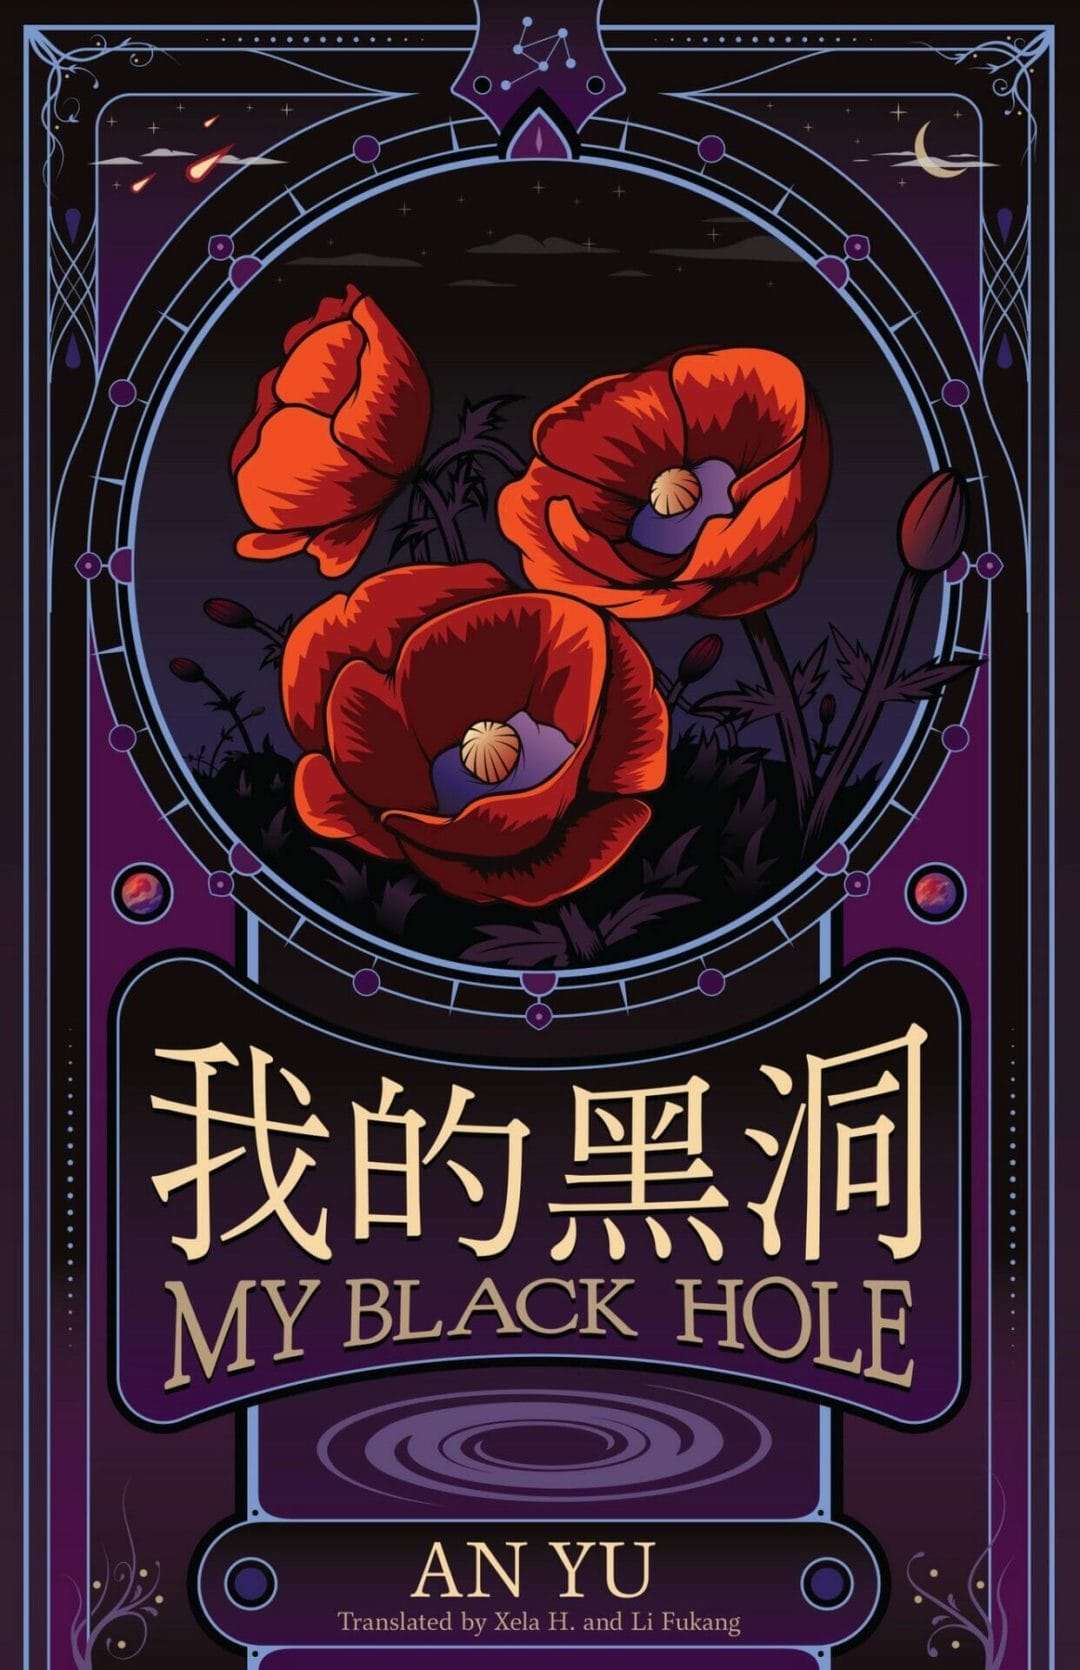 My Black Hole by An Yu